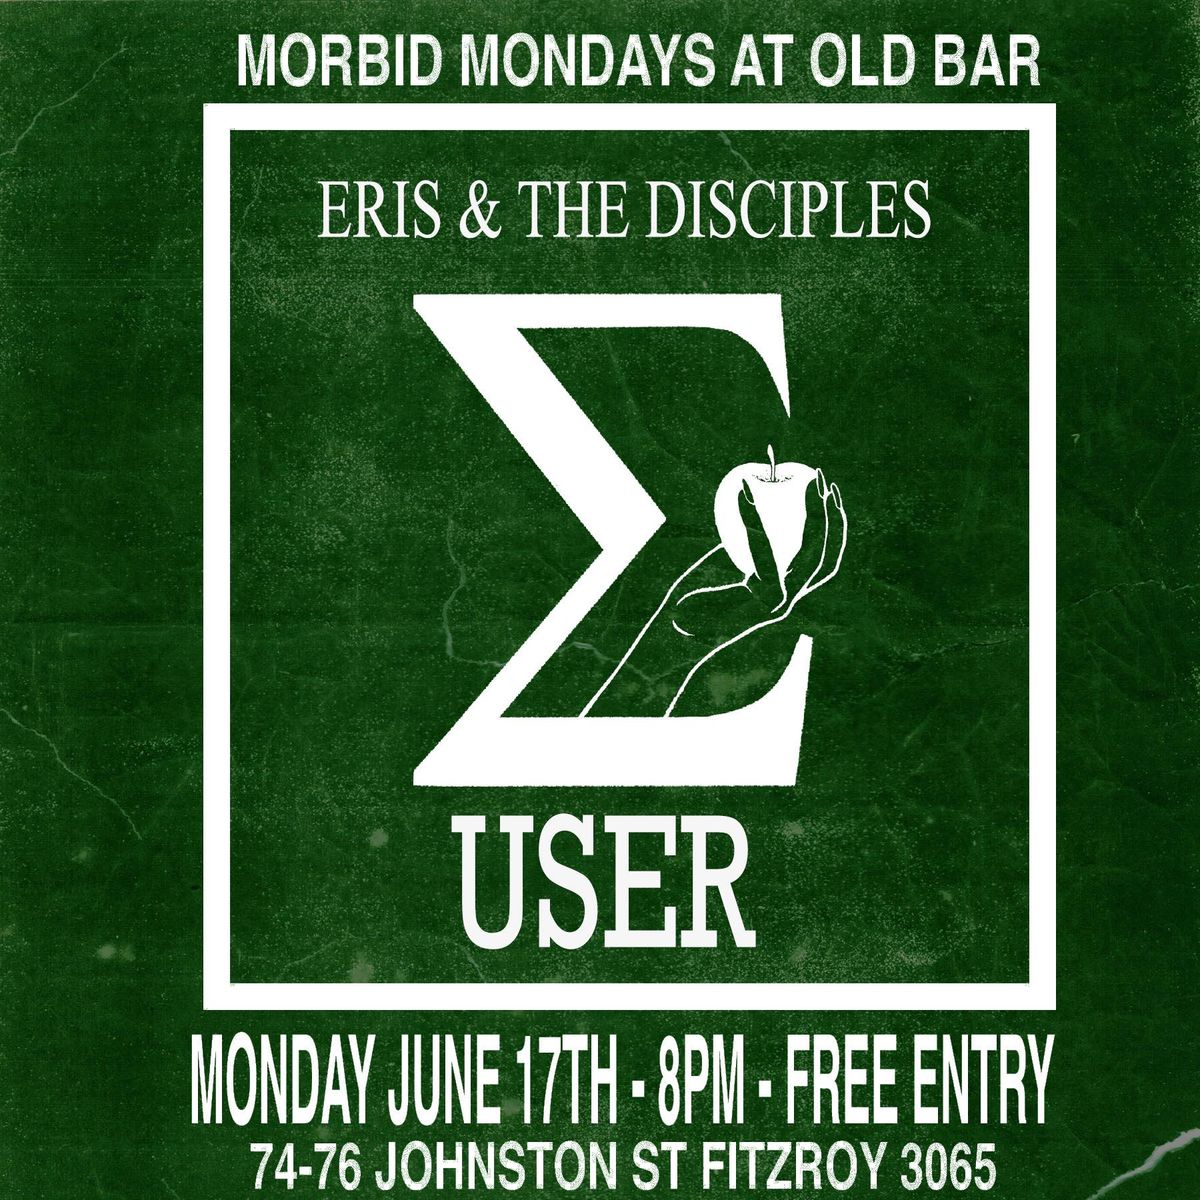 MORBID MONDAYS AT OLD BAR - JUNE 17 - USER + ERIS & THE DISCIPLES 